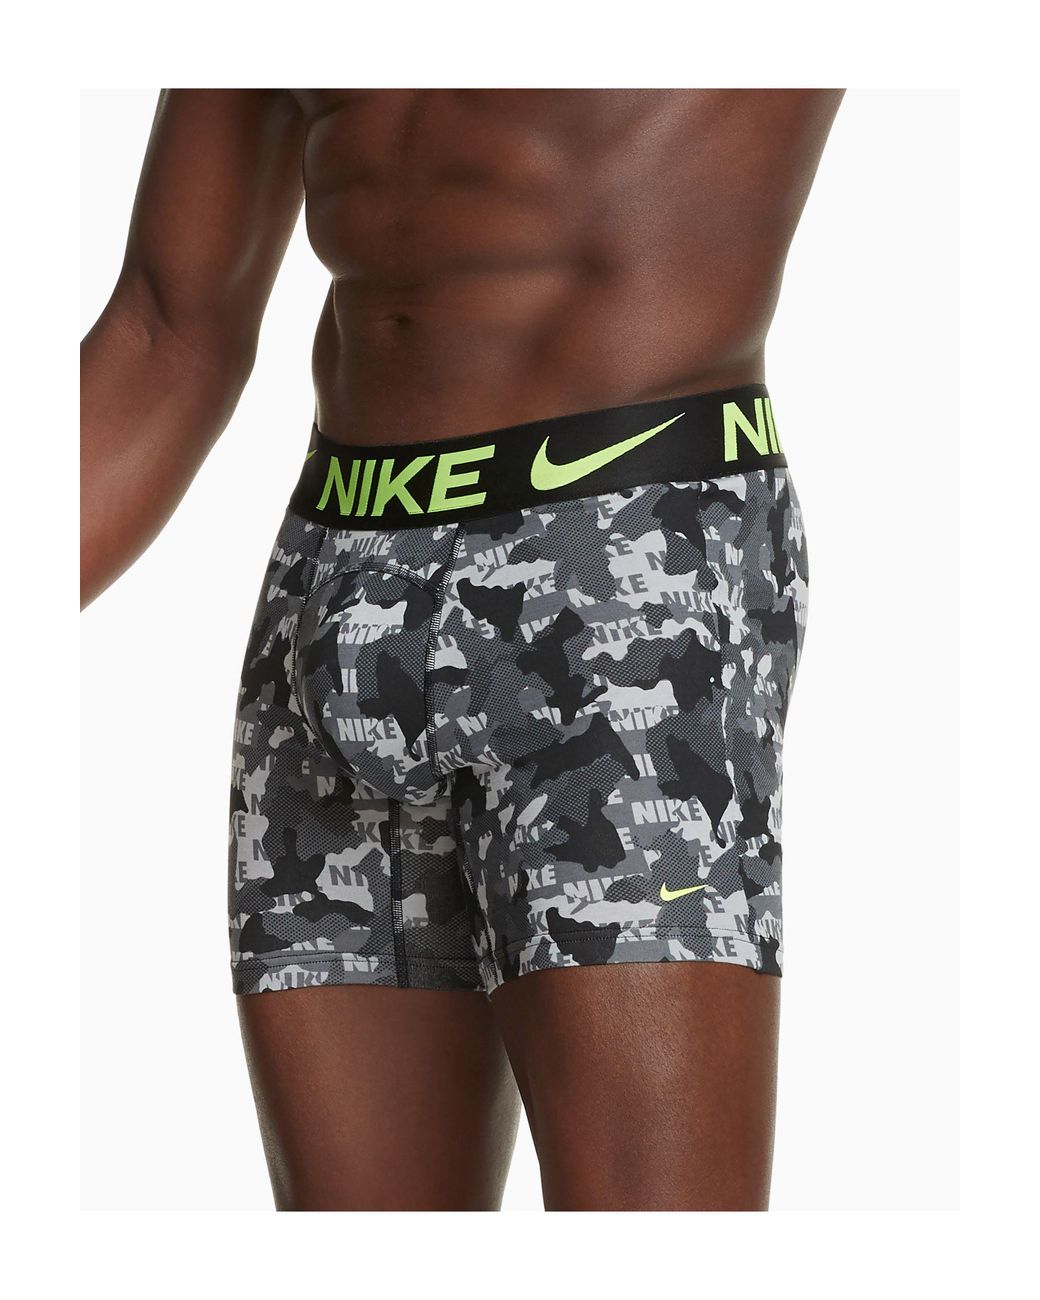 Nike Luxe Cotton Modal Camo Print Boxer Briefs for Men - Lyst